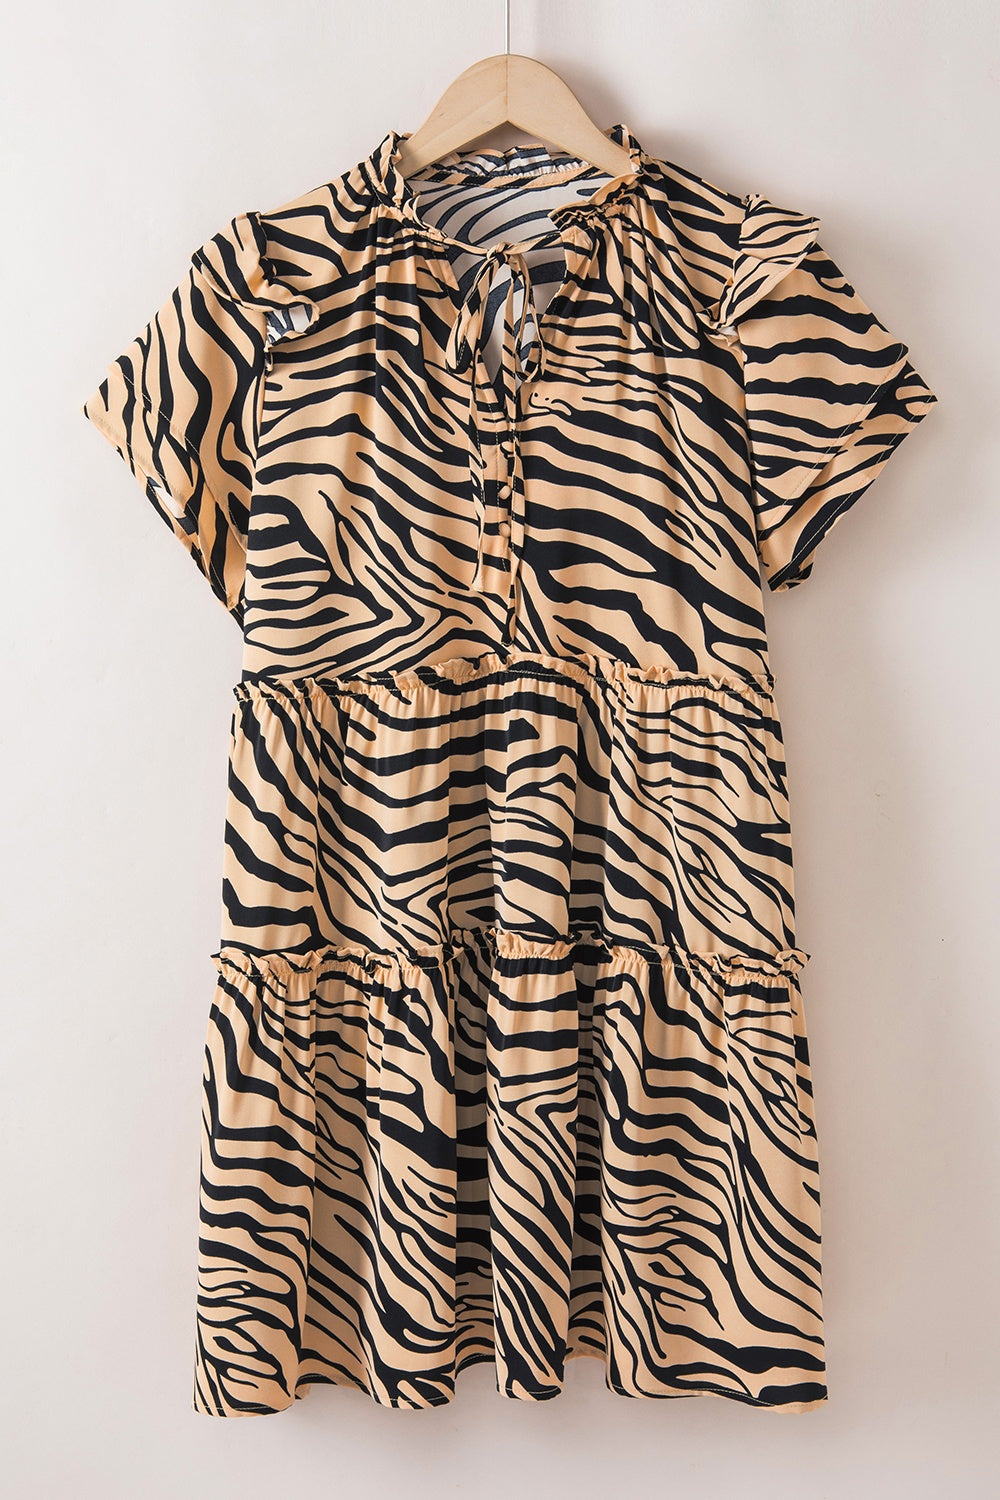 TEEK - Ruffled Tiger Print Tie Neck Dress DRESS TEEK Trend M  